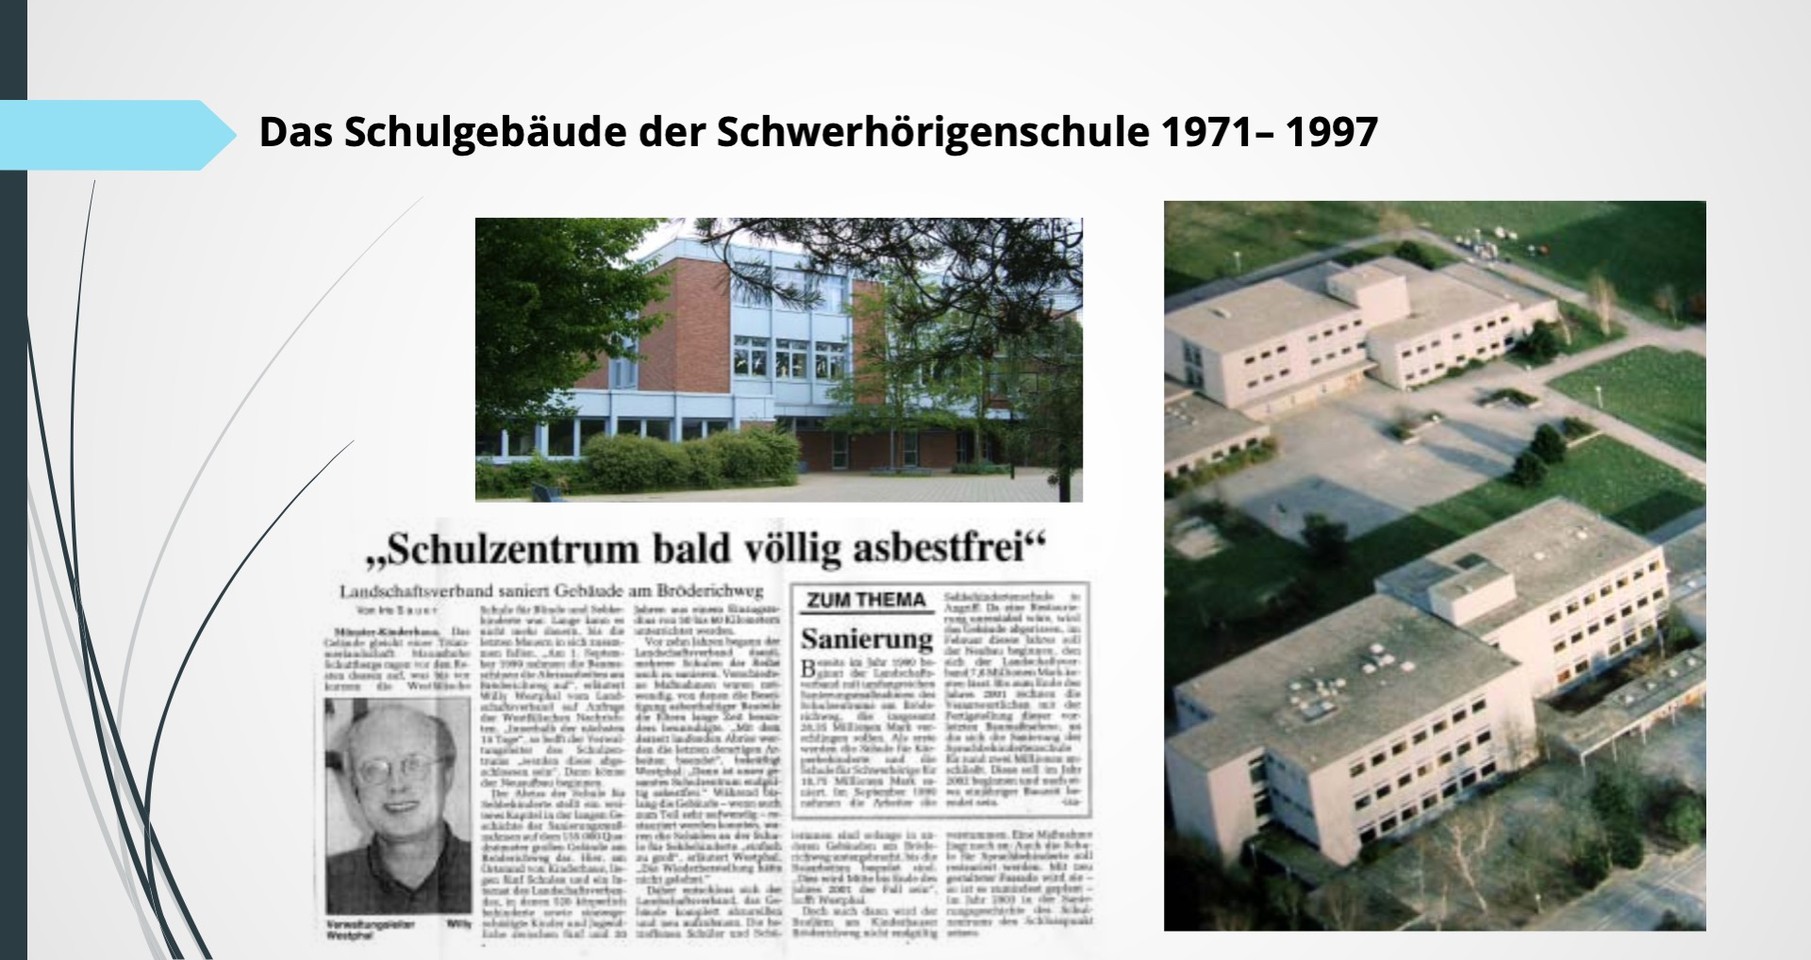 Luftaufnahme der Schulgebäude der Schwerhörigenschule, Zeitungsartikel mit der Überschrift "Schulzentrum bald völlig asbestfrei"